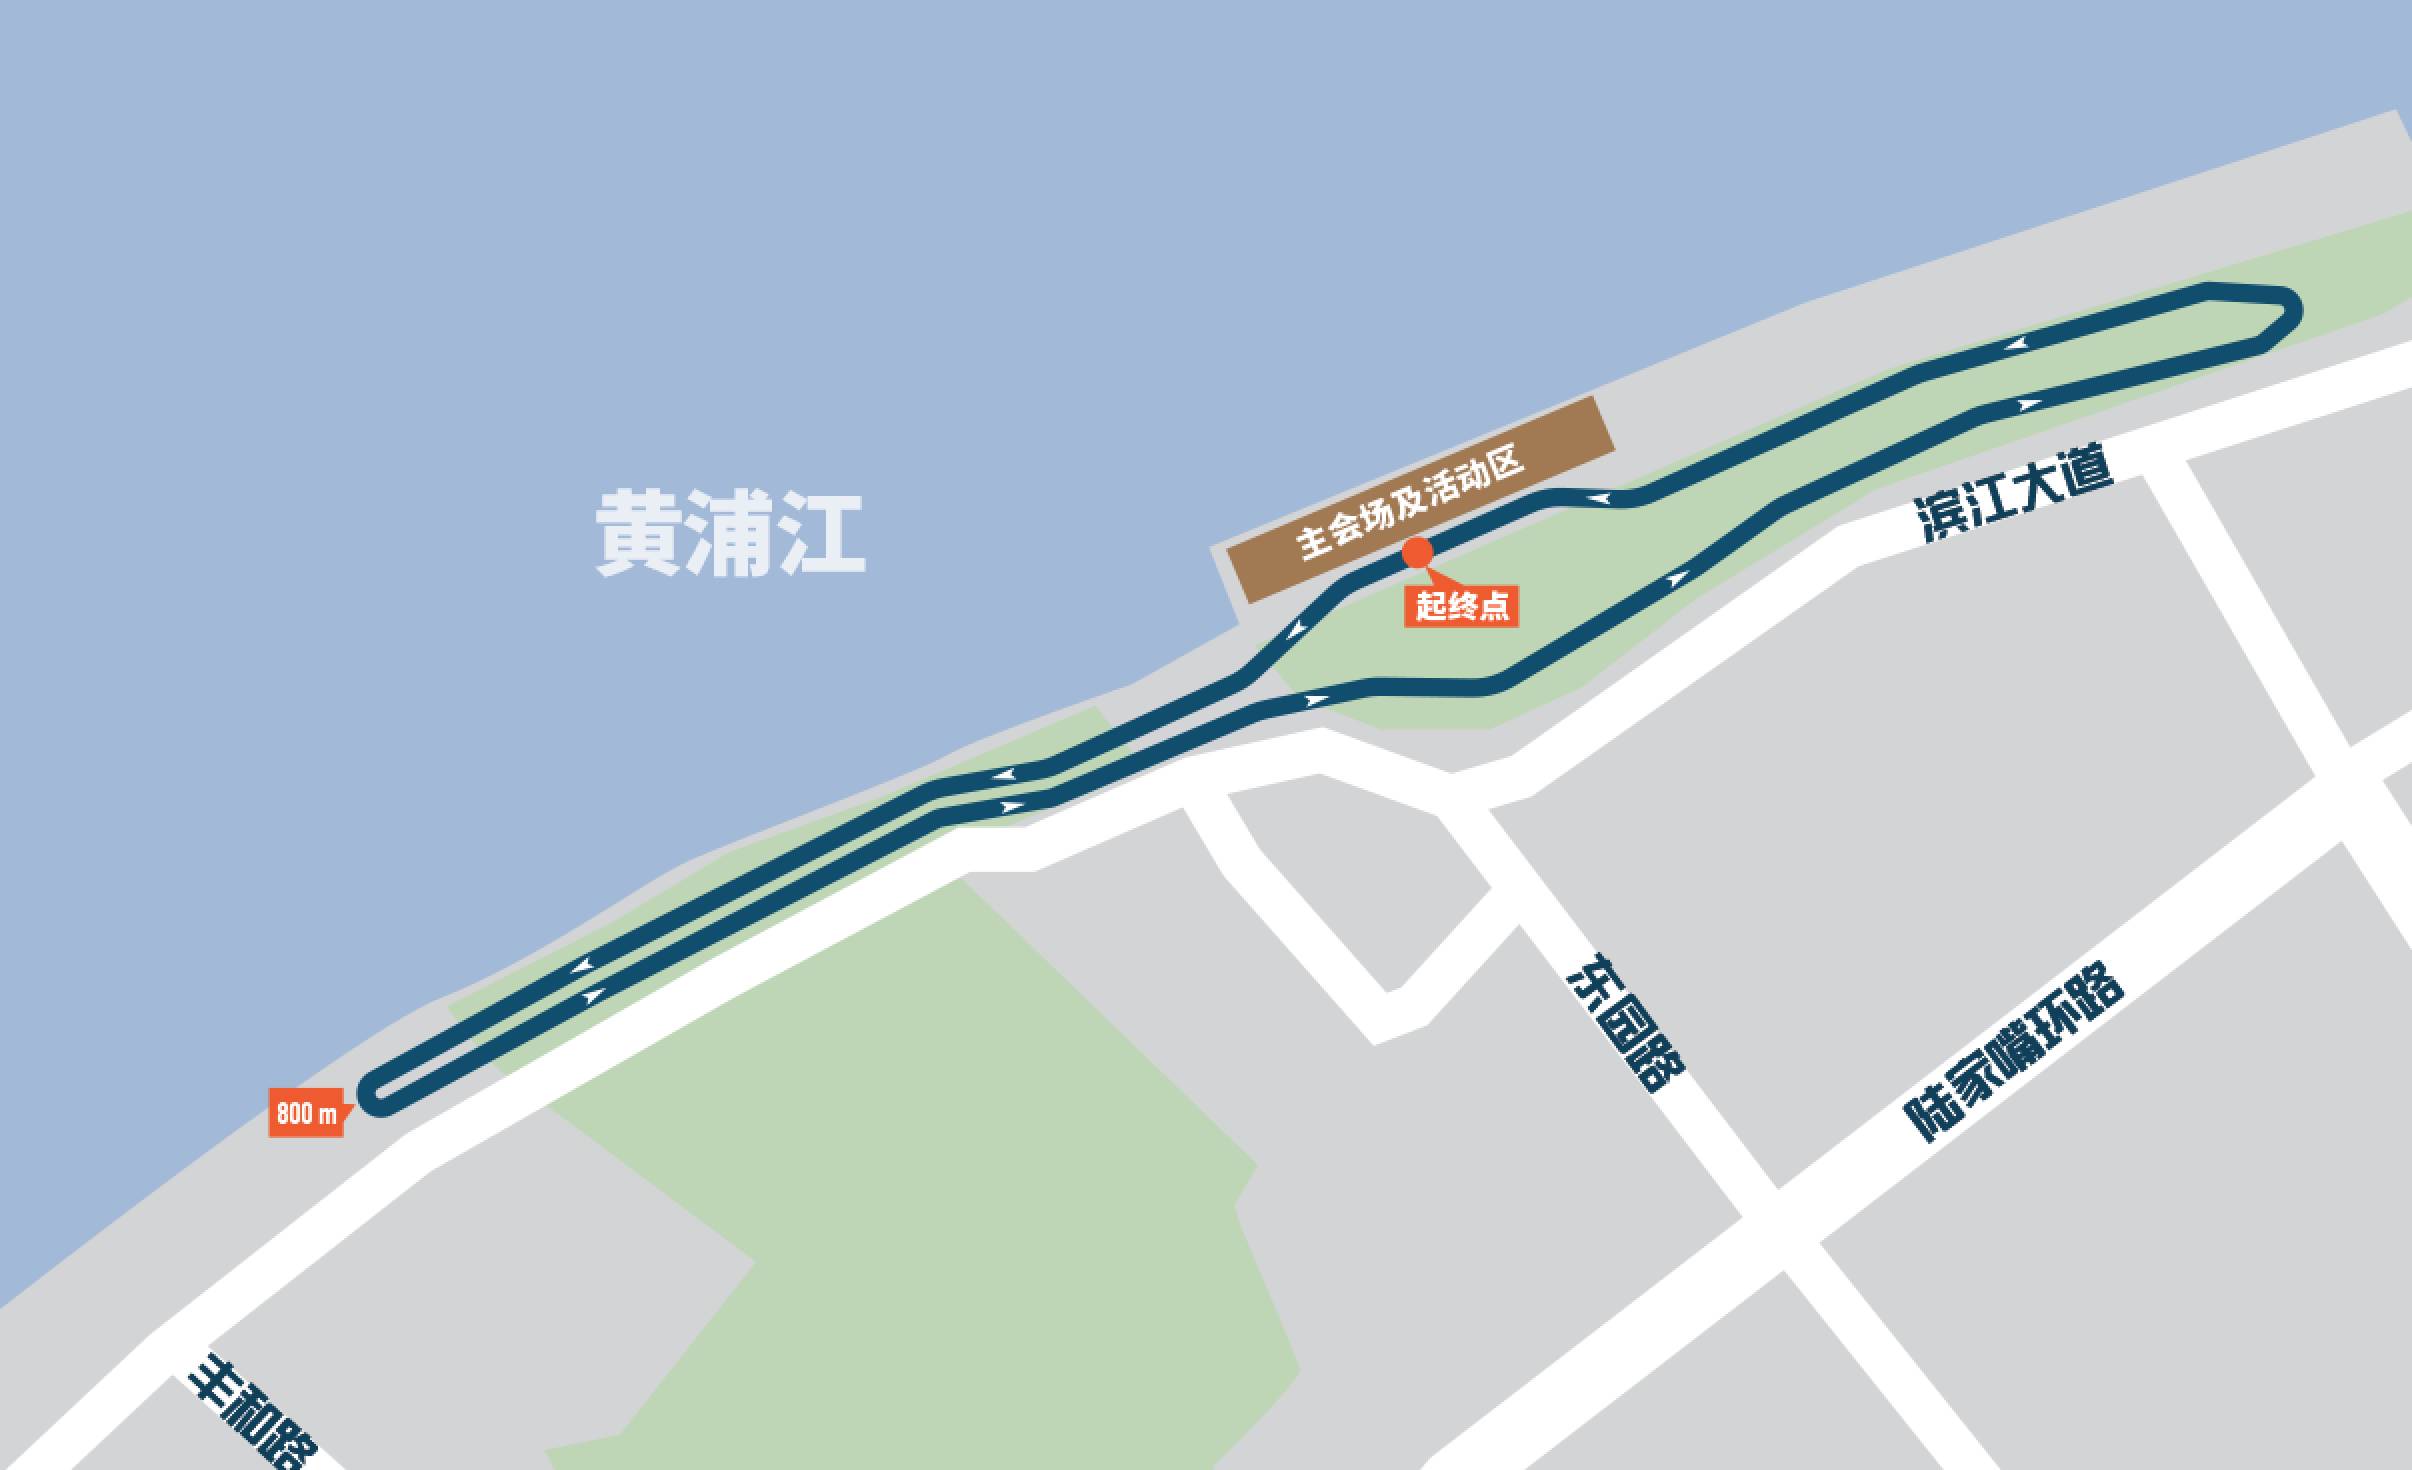 浦东滨江大道线路图图片